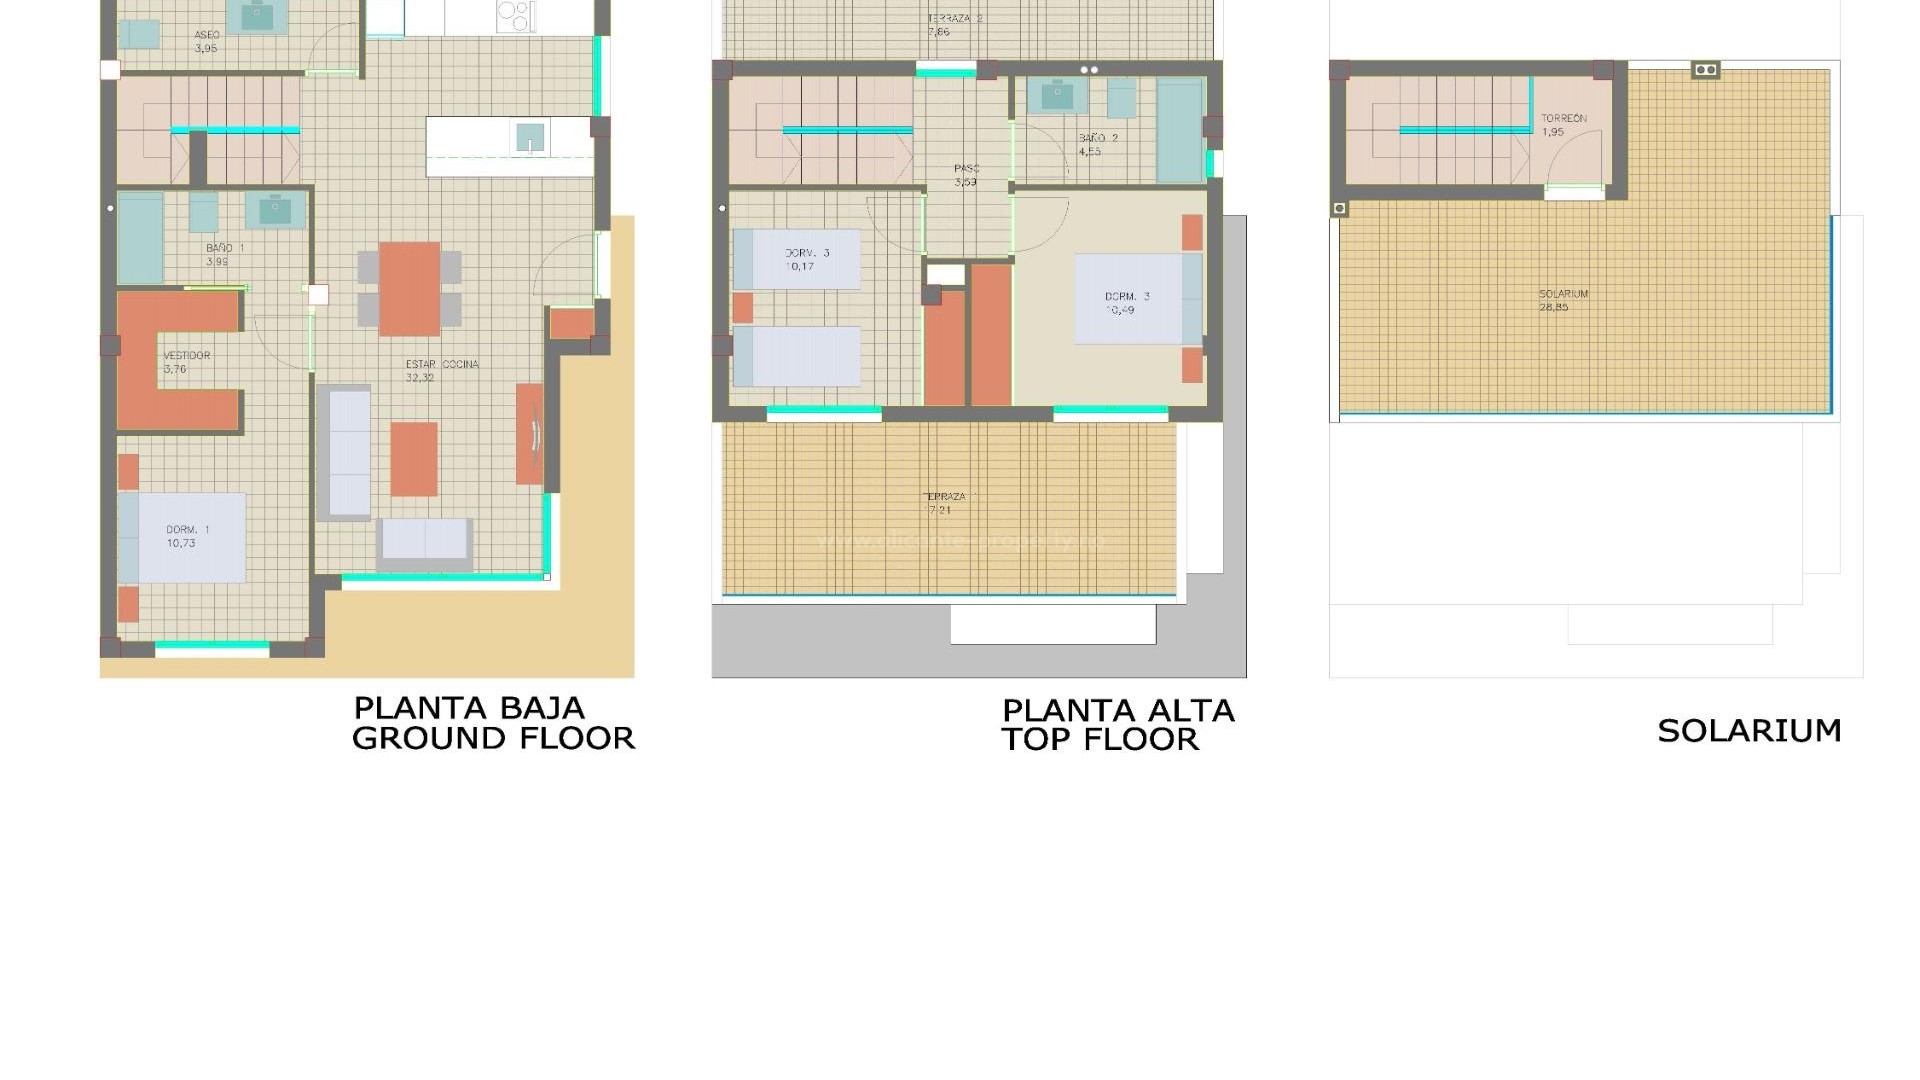 Helt nye hus/villaer i Pilar de La Horadada, 3 soverom, 2 bad, hage med basseng terrasse, solarium og kjeller med parkering